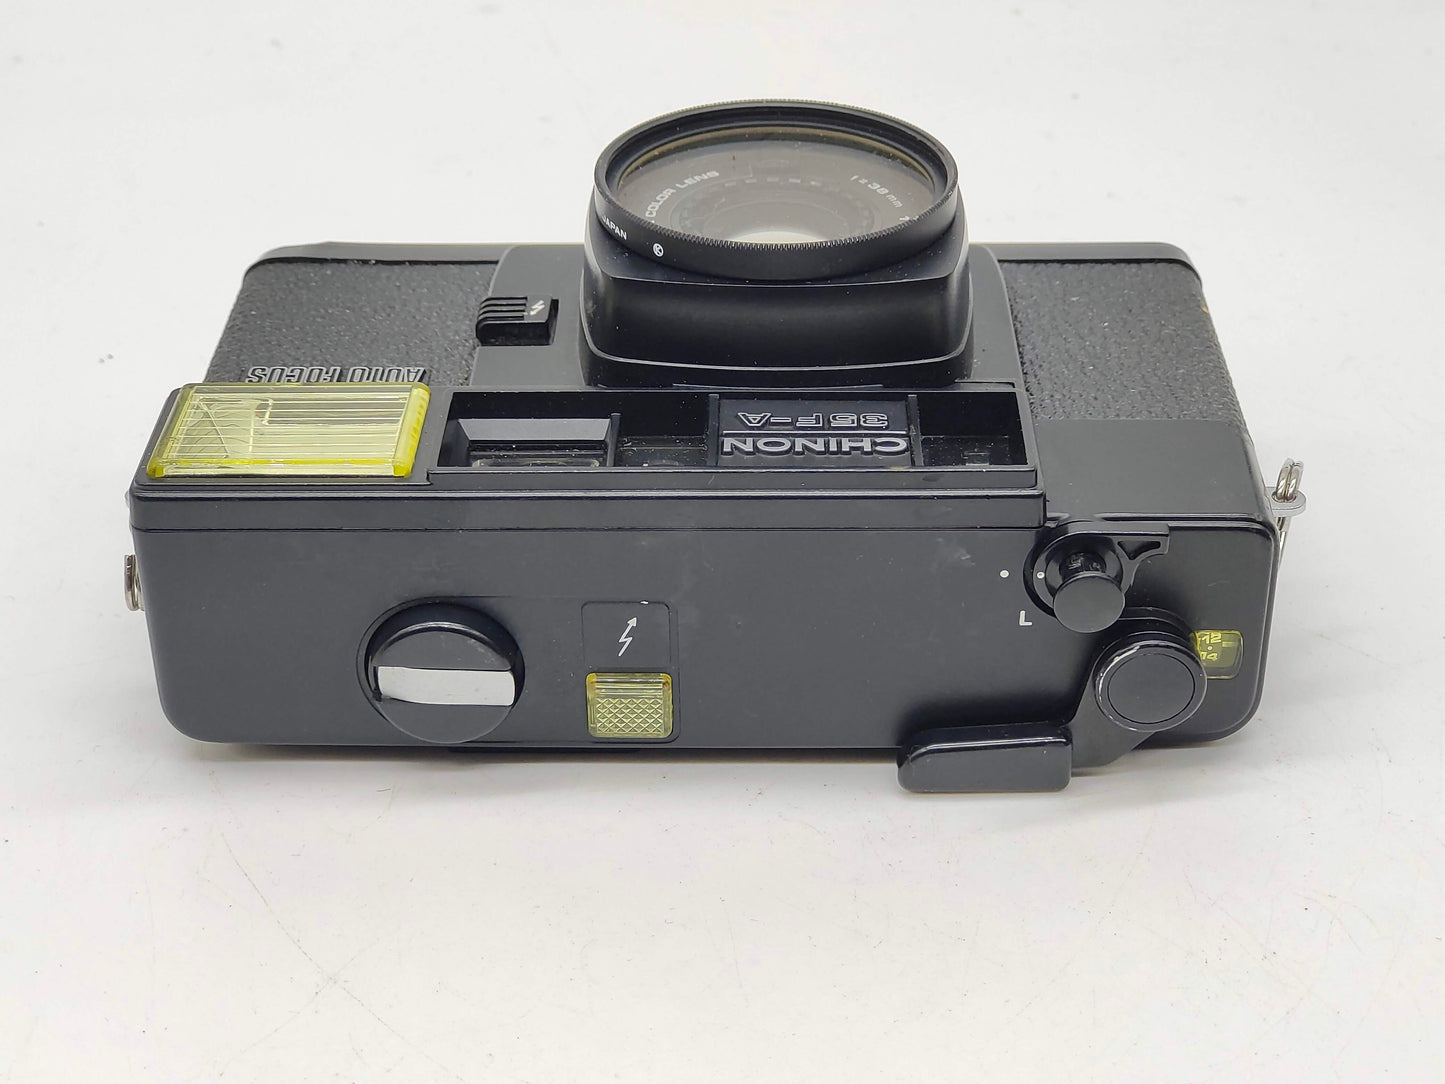 Chinon 35 F-A retro film camera